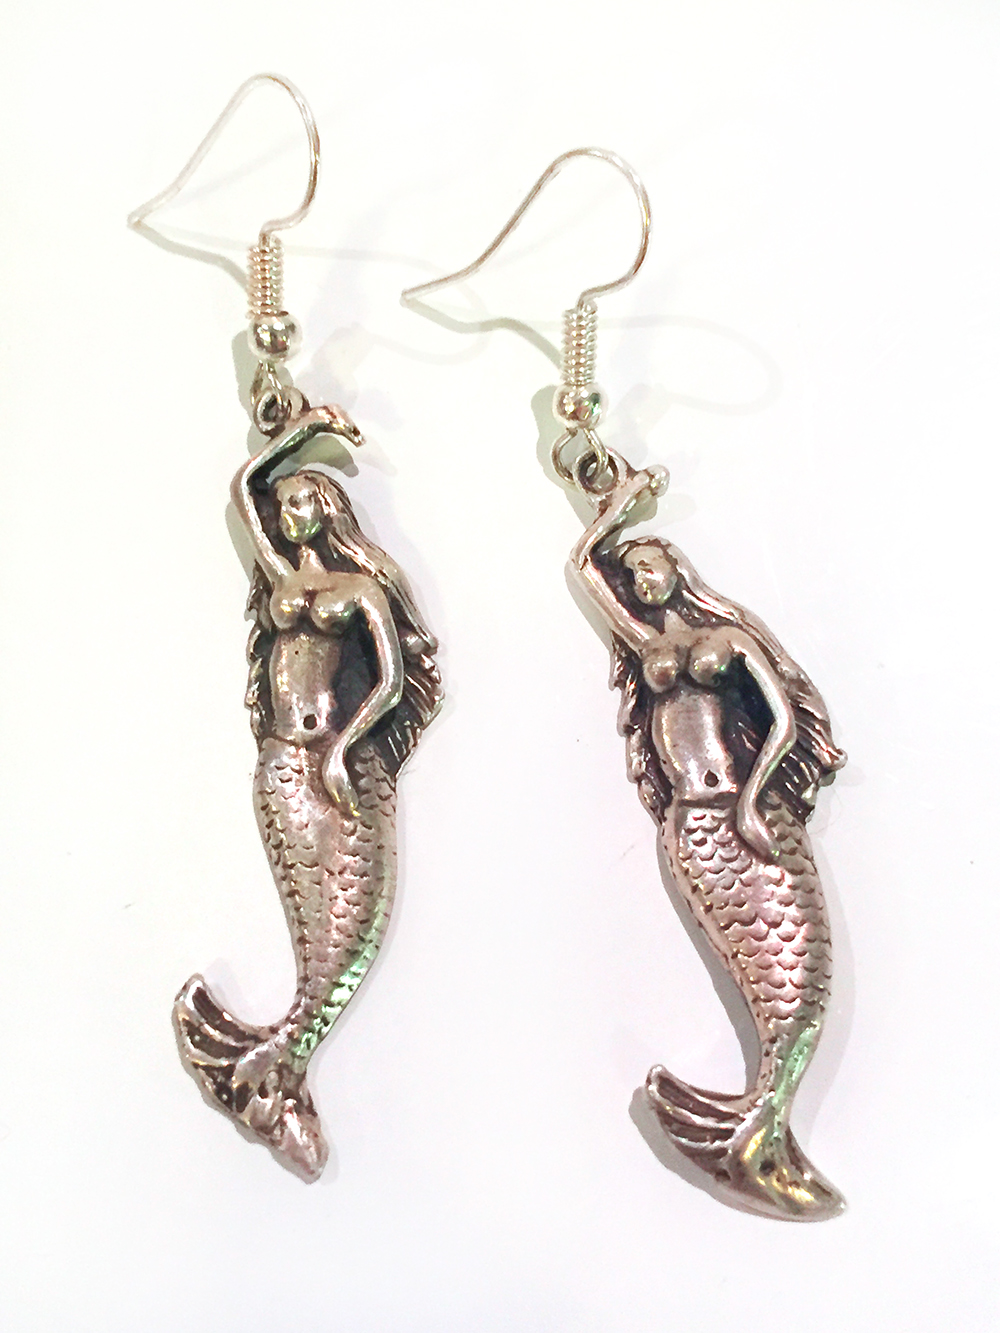 Mermaid Wave Earrings in Sterling Silver - SilverBotanica - Handmade